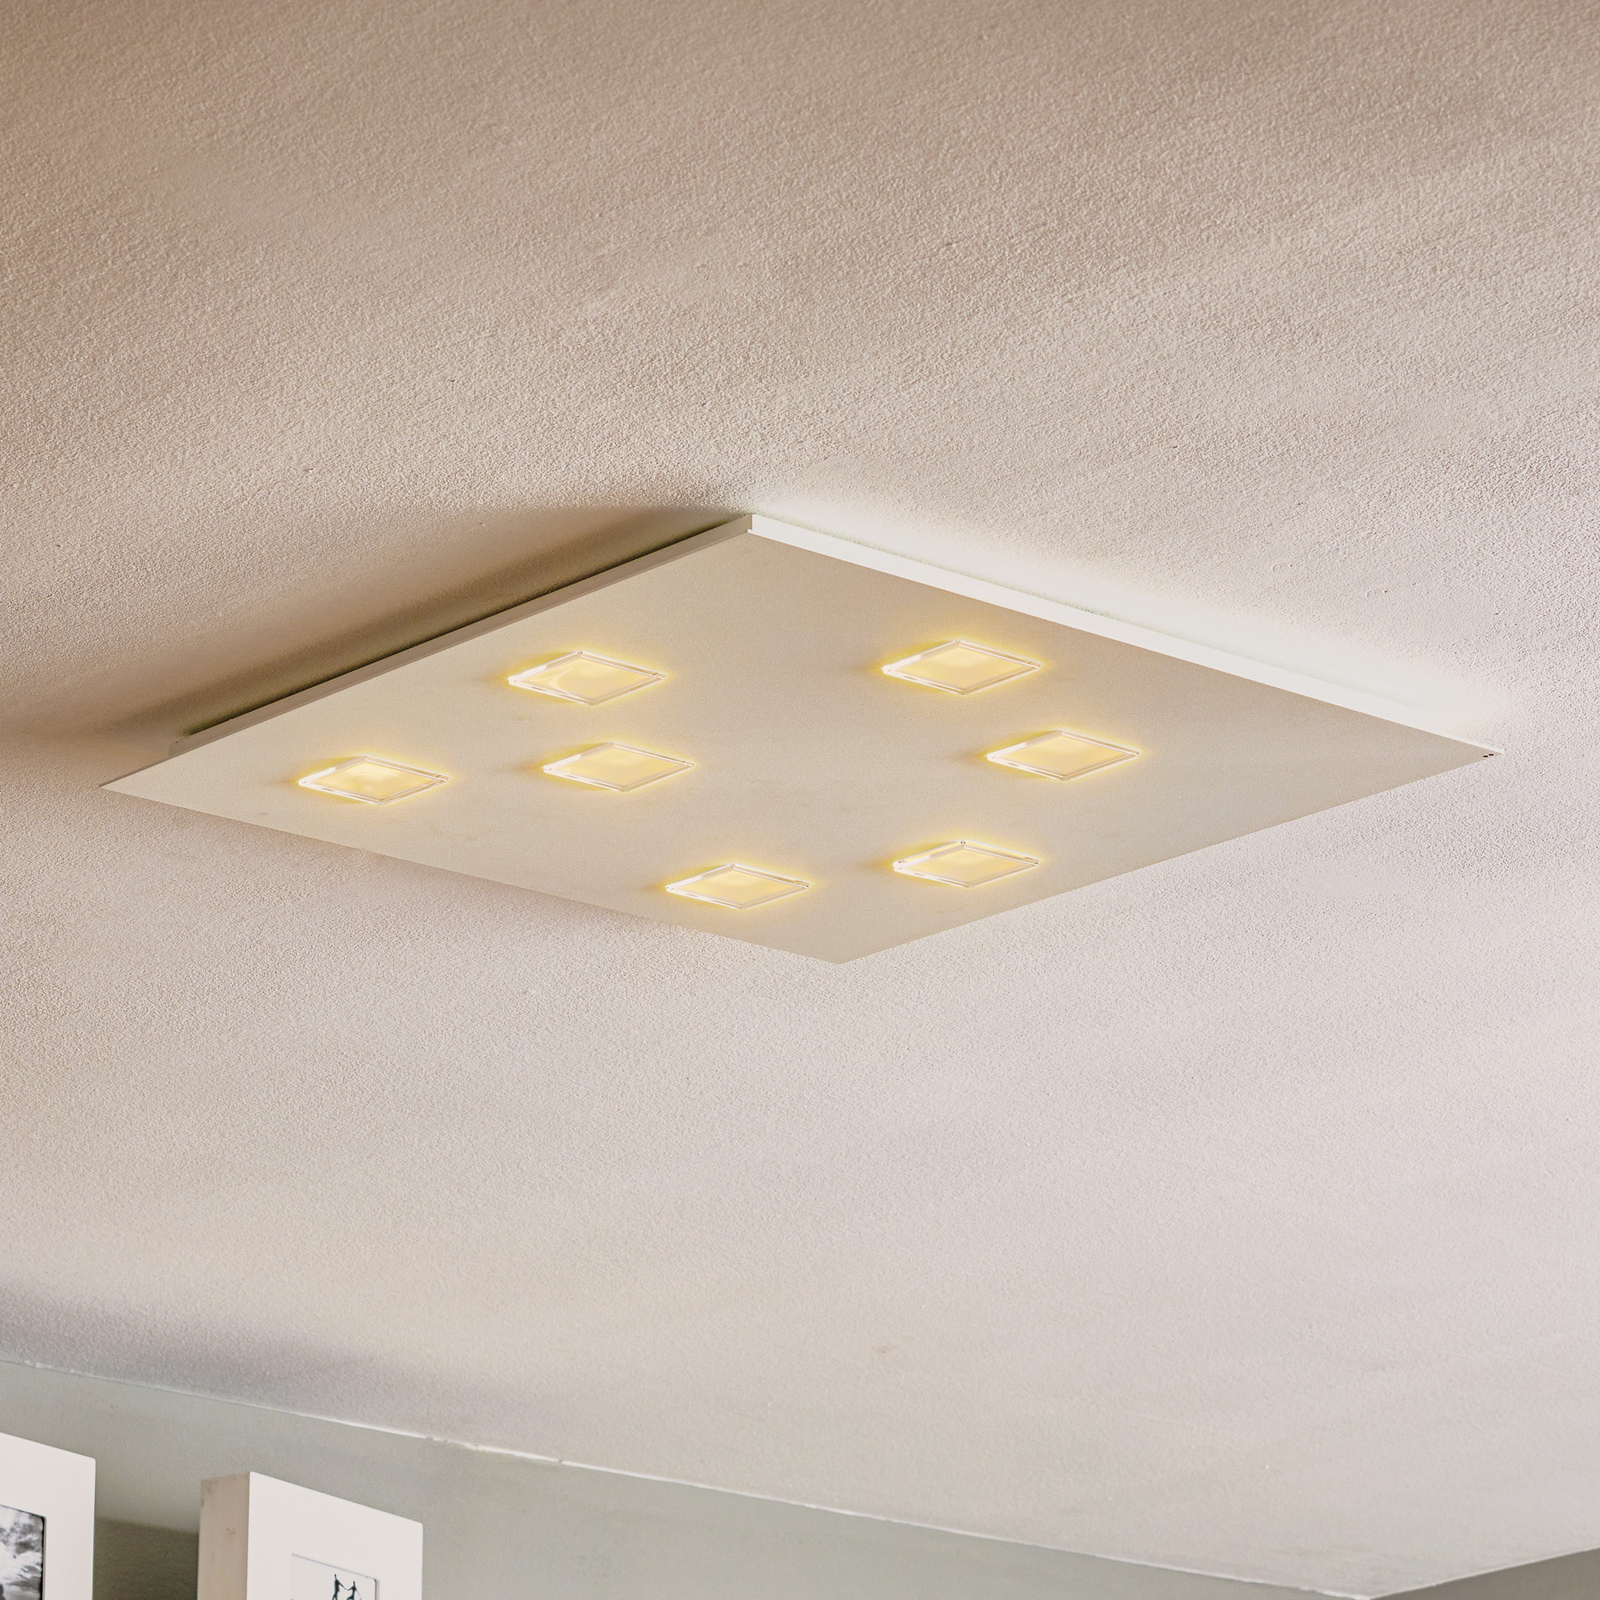 Bright Quarter LED ceiling light in white